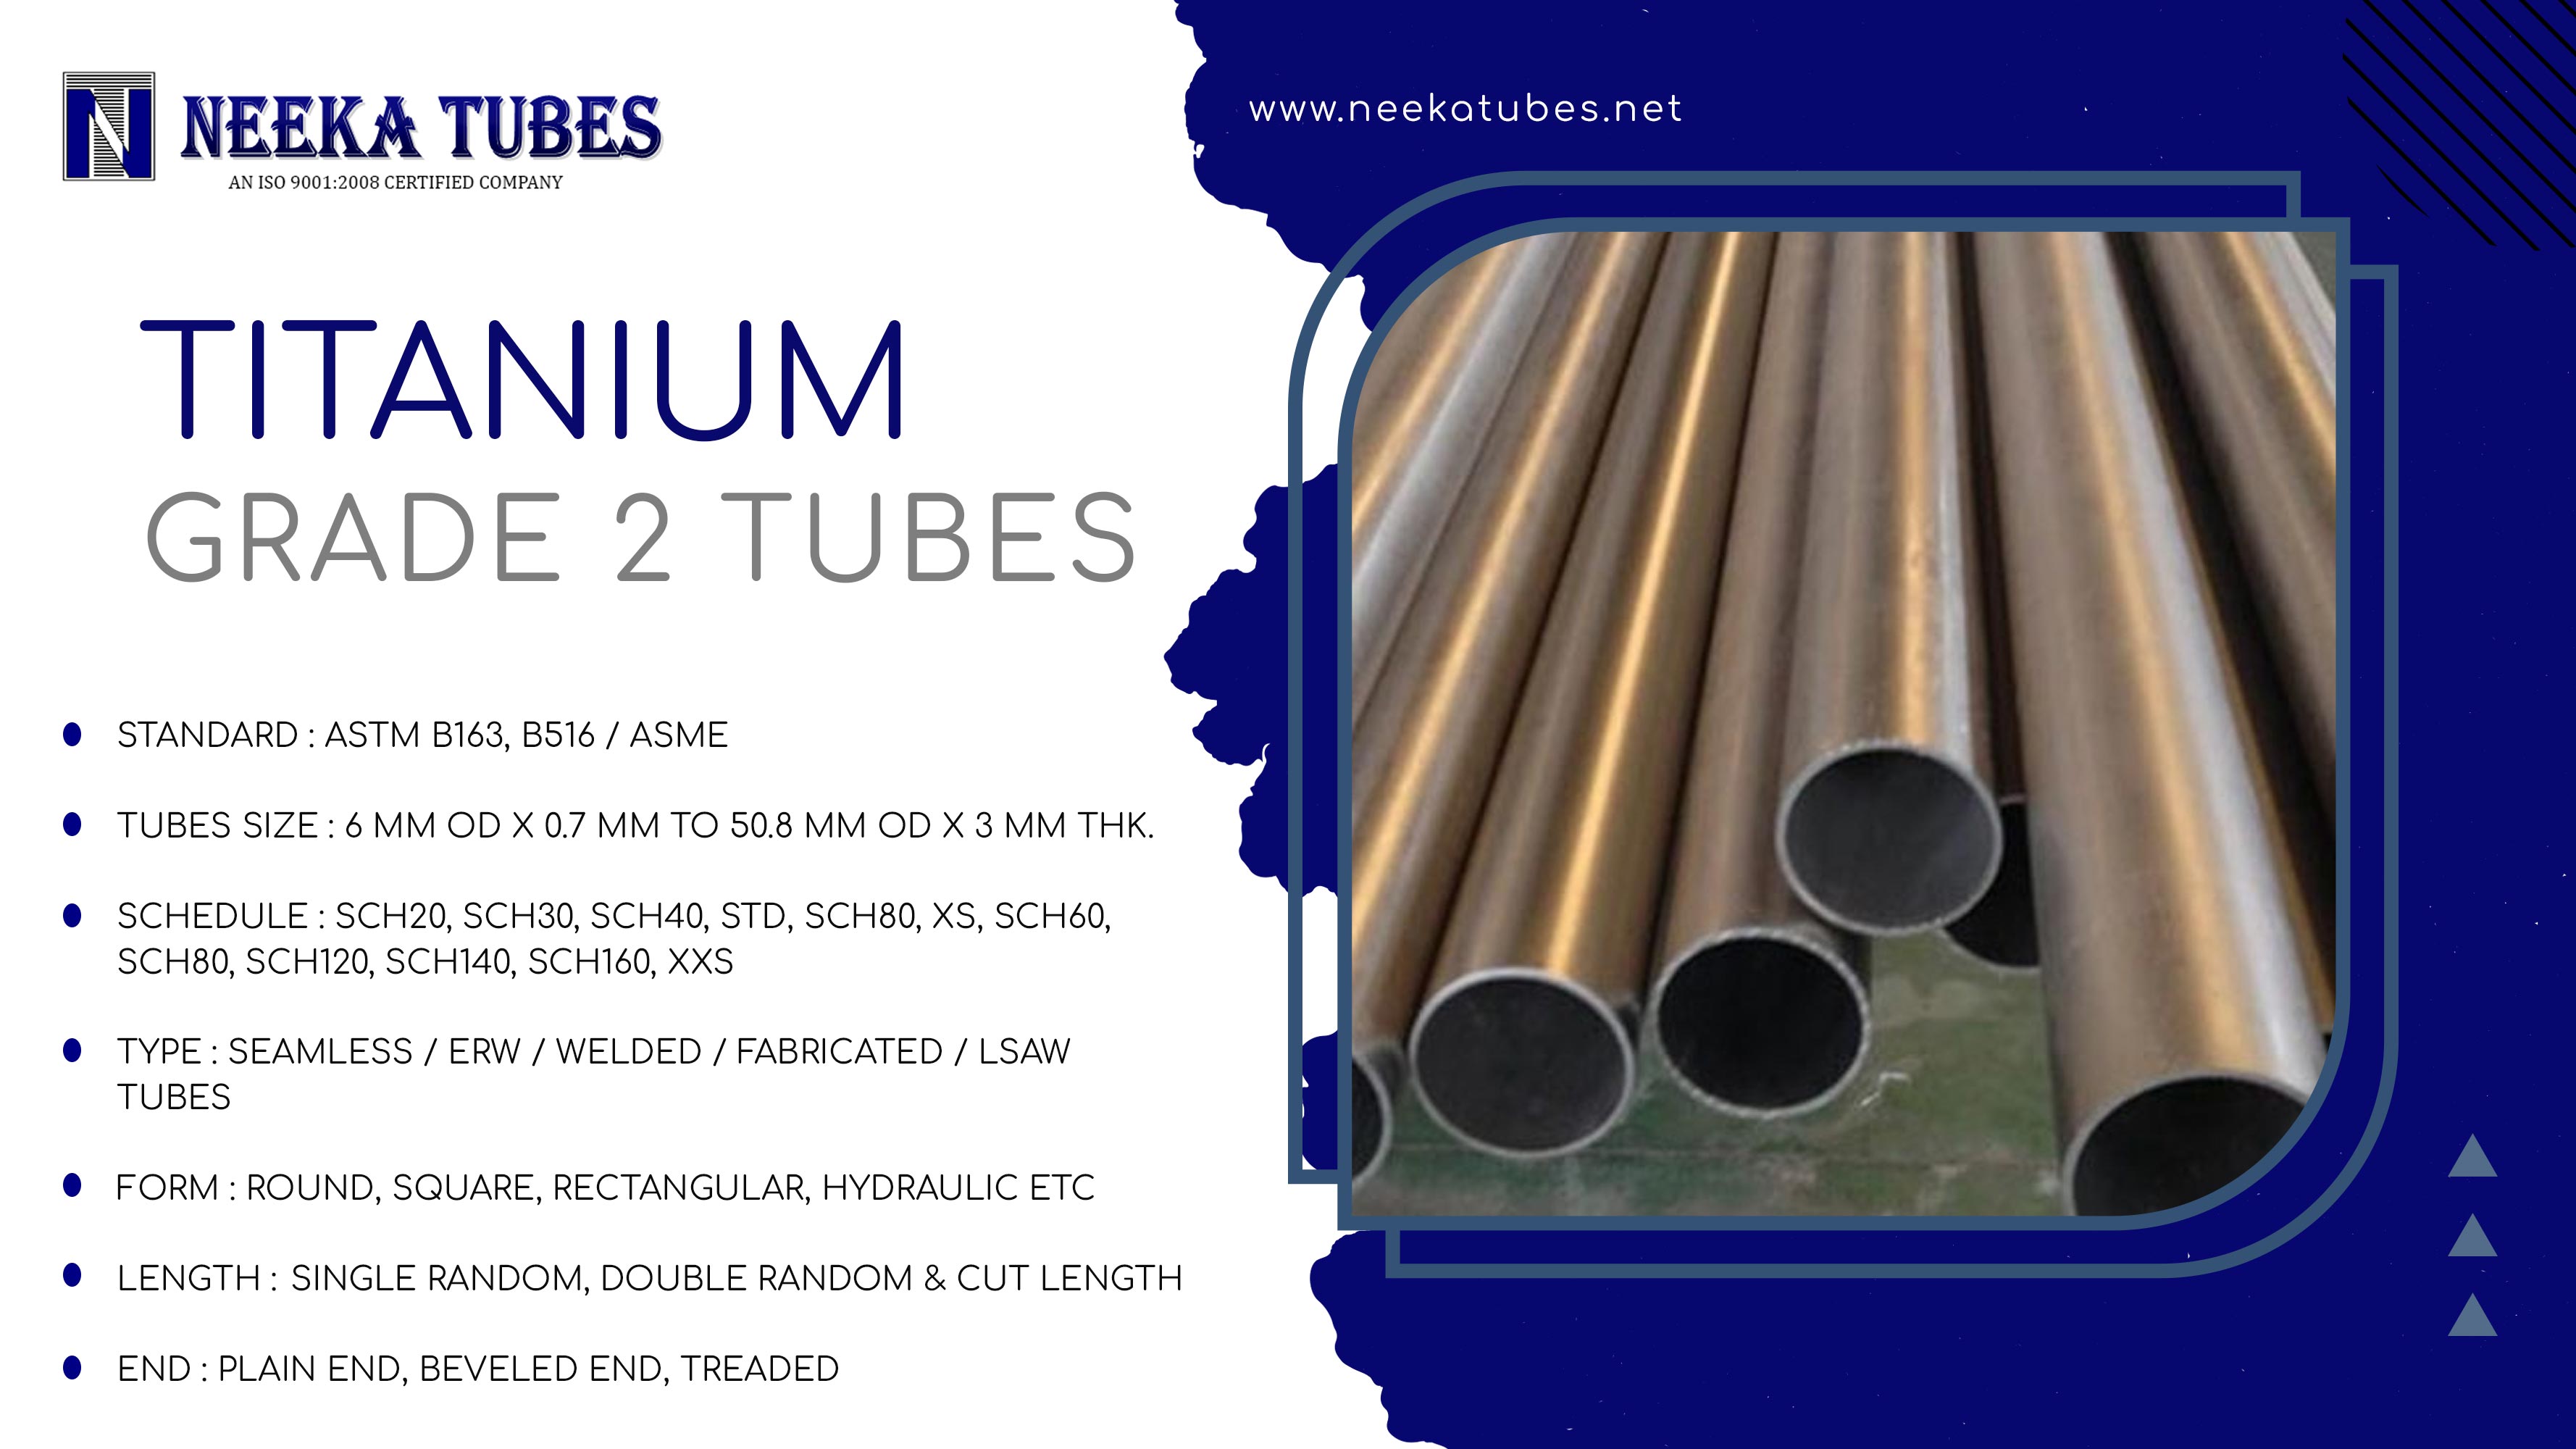 Tittanium grade 2 tubes specification